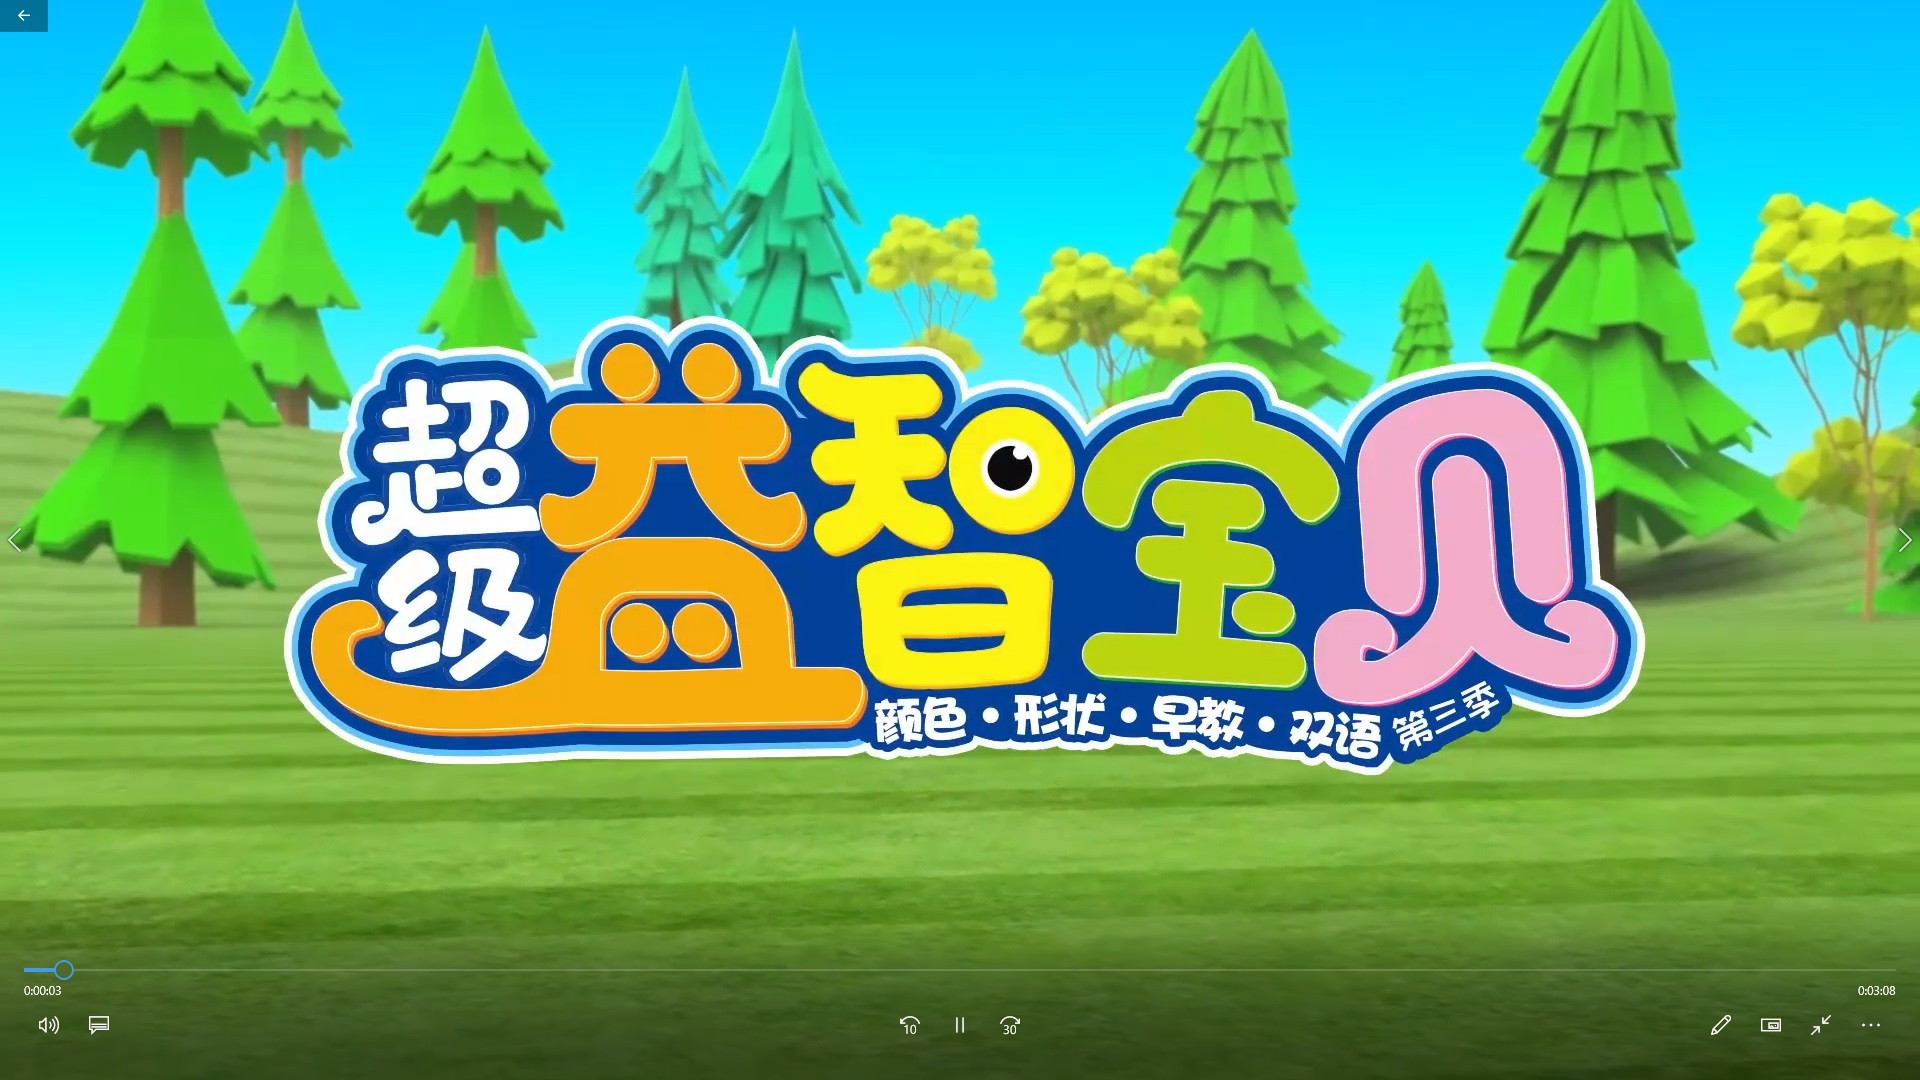 超级益智宝贝 第三季 中文版全42集国语高清1080P视频MP4免费下载 - 童话之家-以爱之心做事,感恩之心做人!